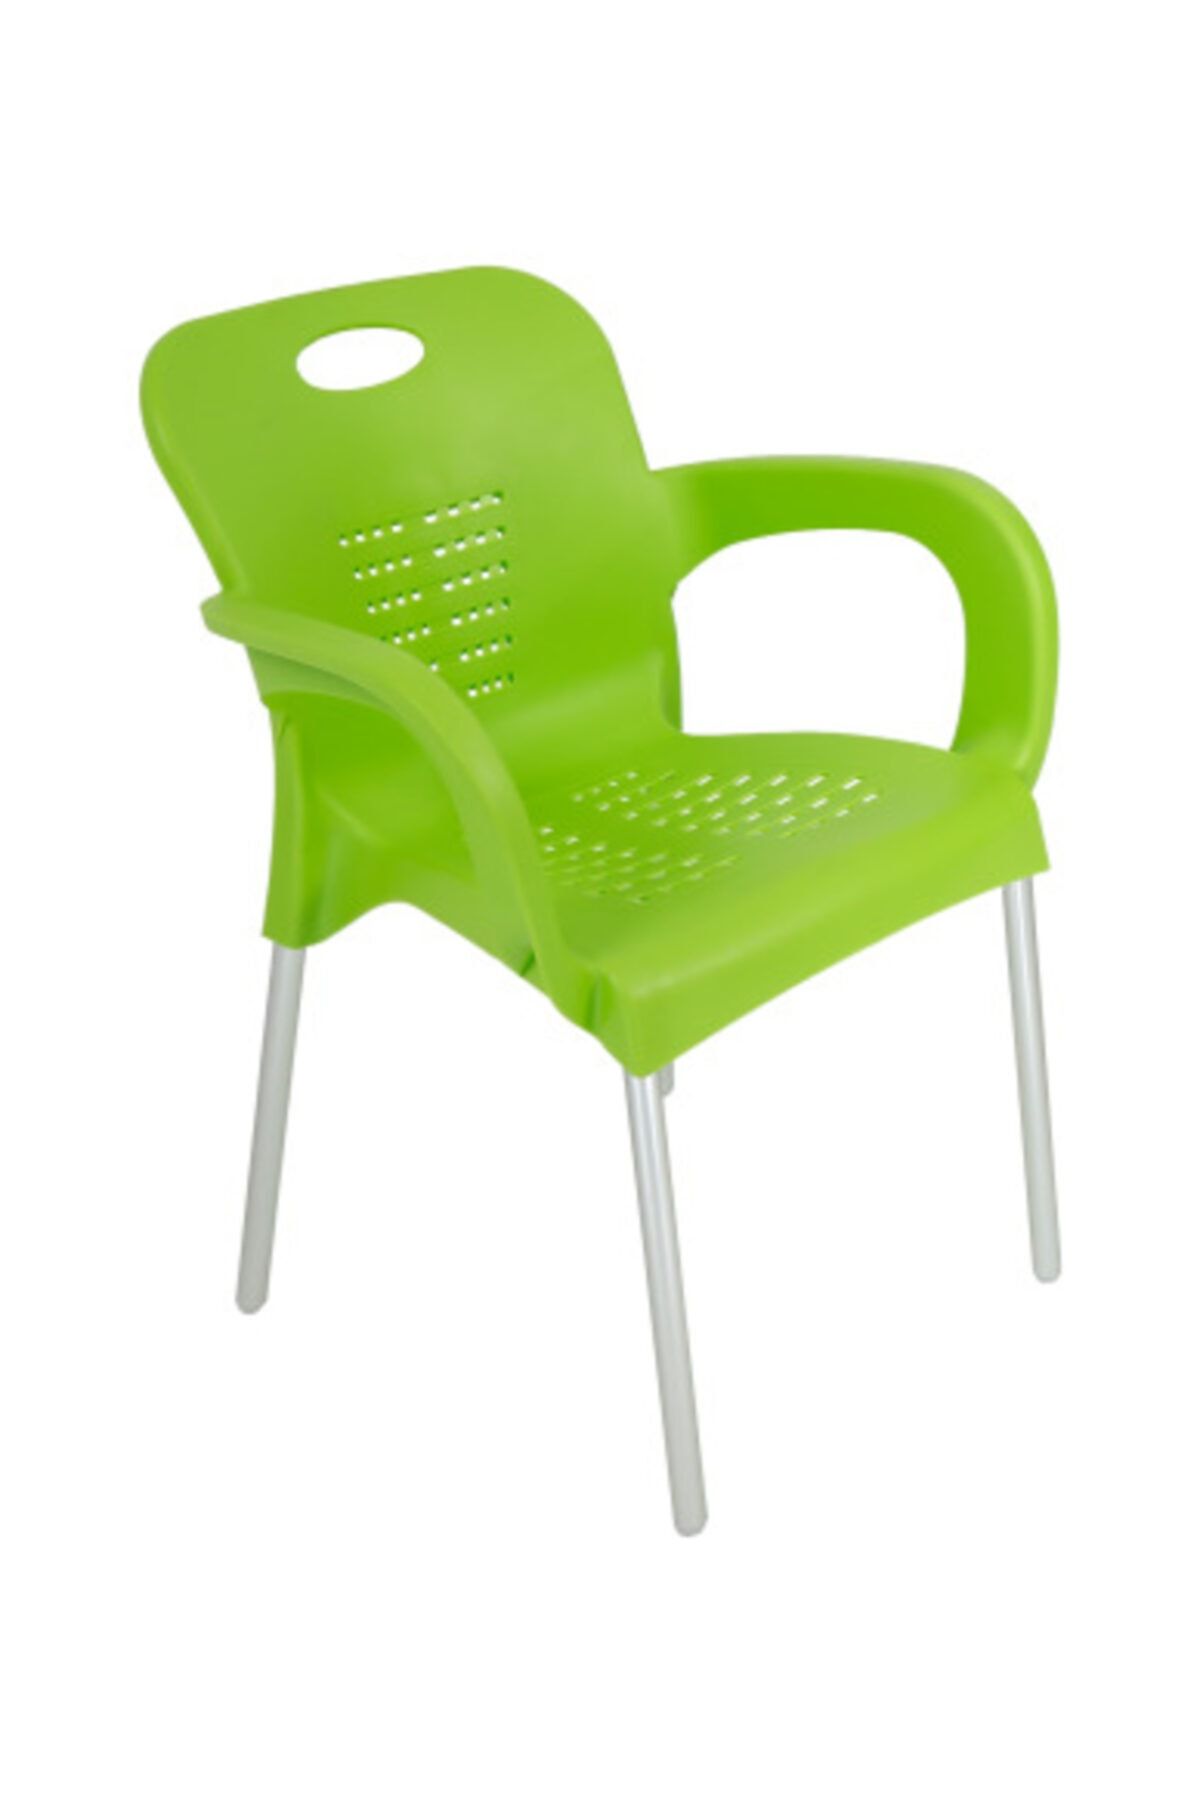 yılmaz masacılık Yeşil Kollu Sandalye 4 Adet